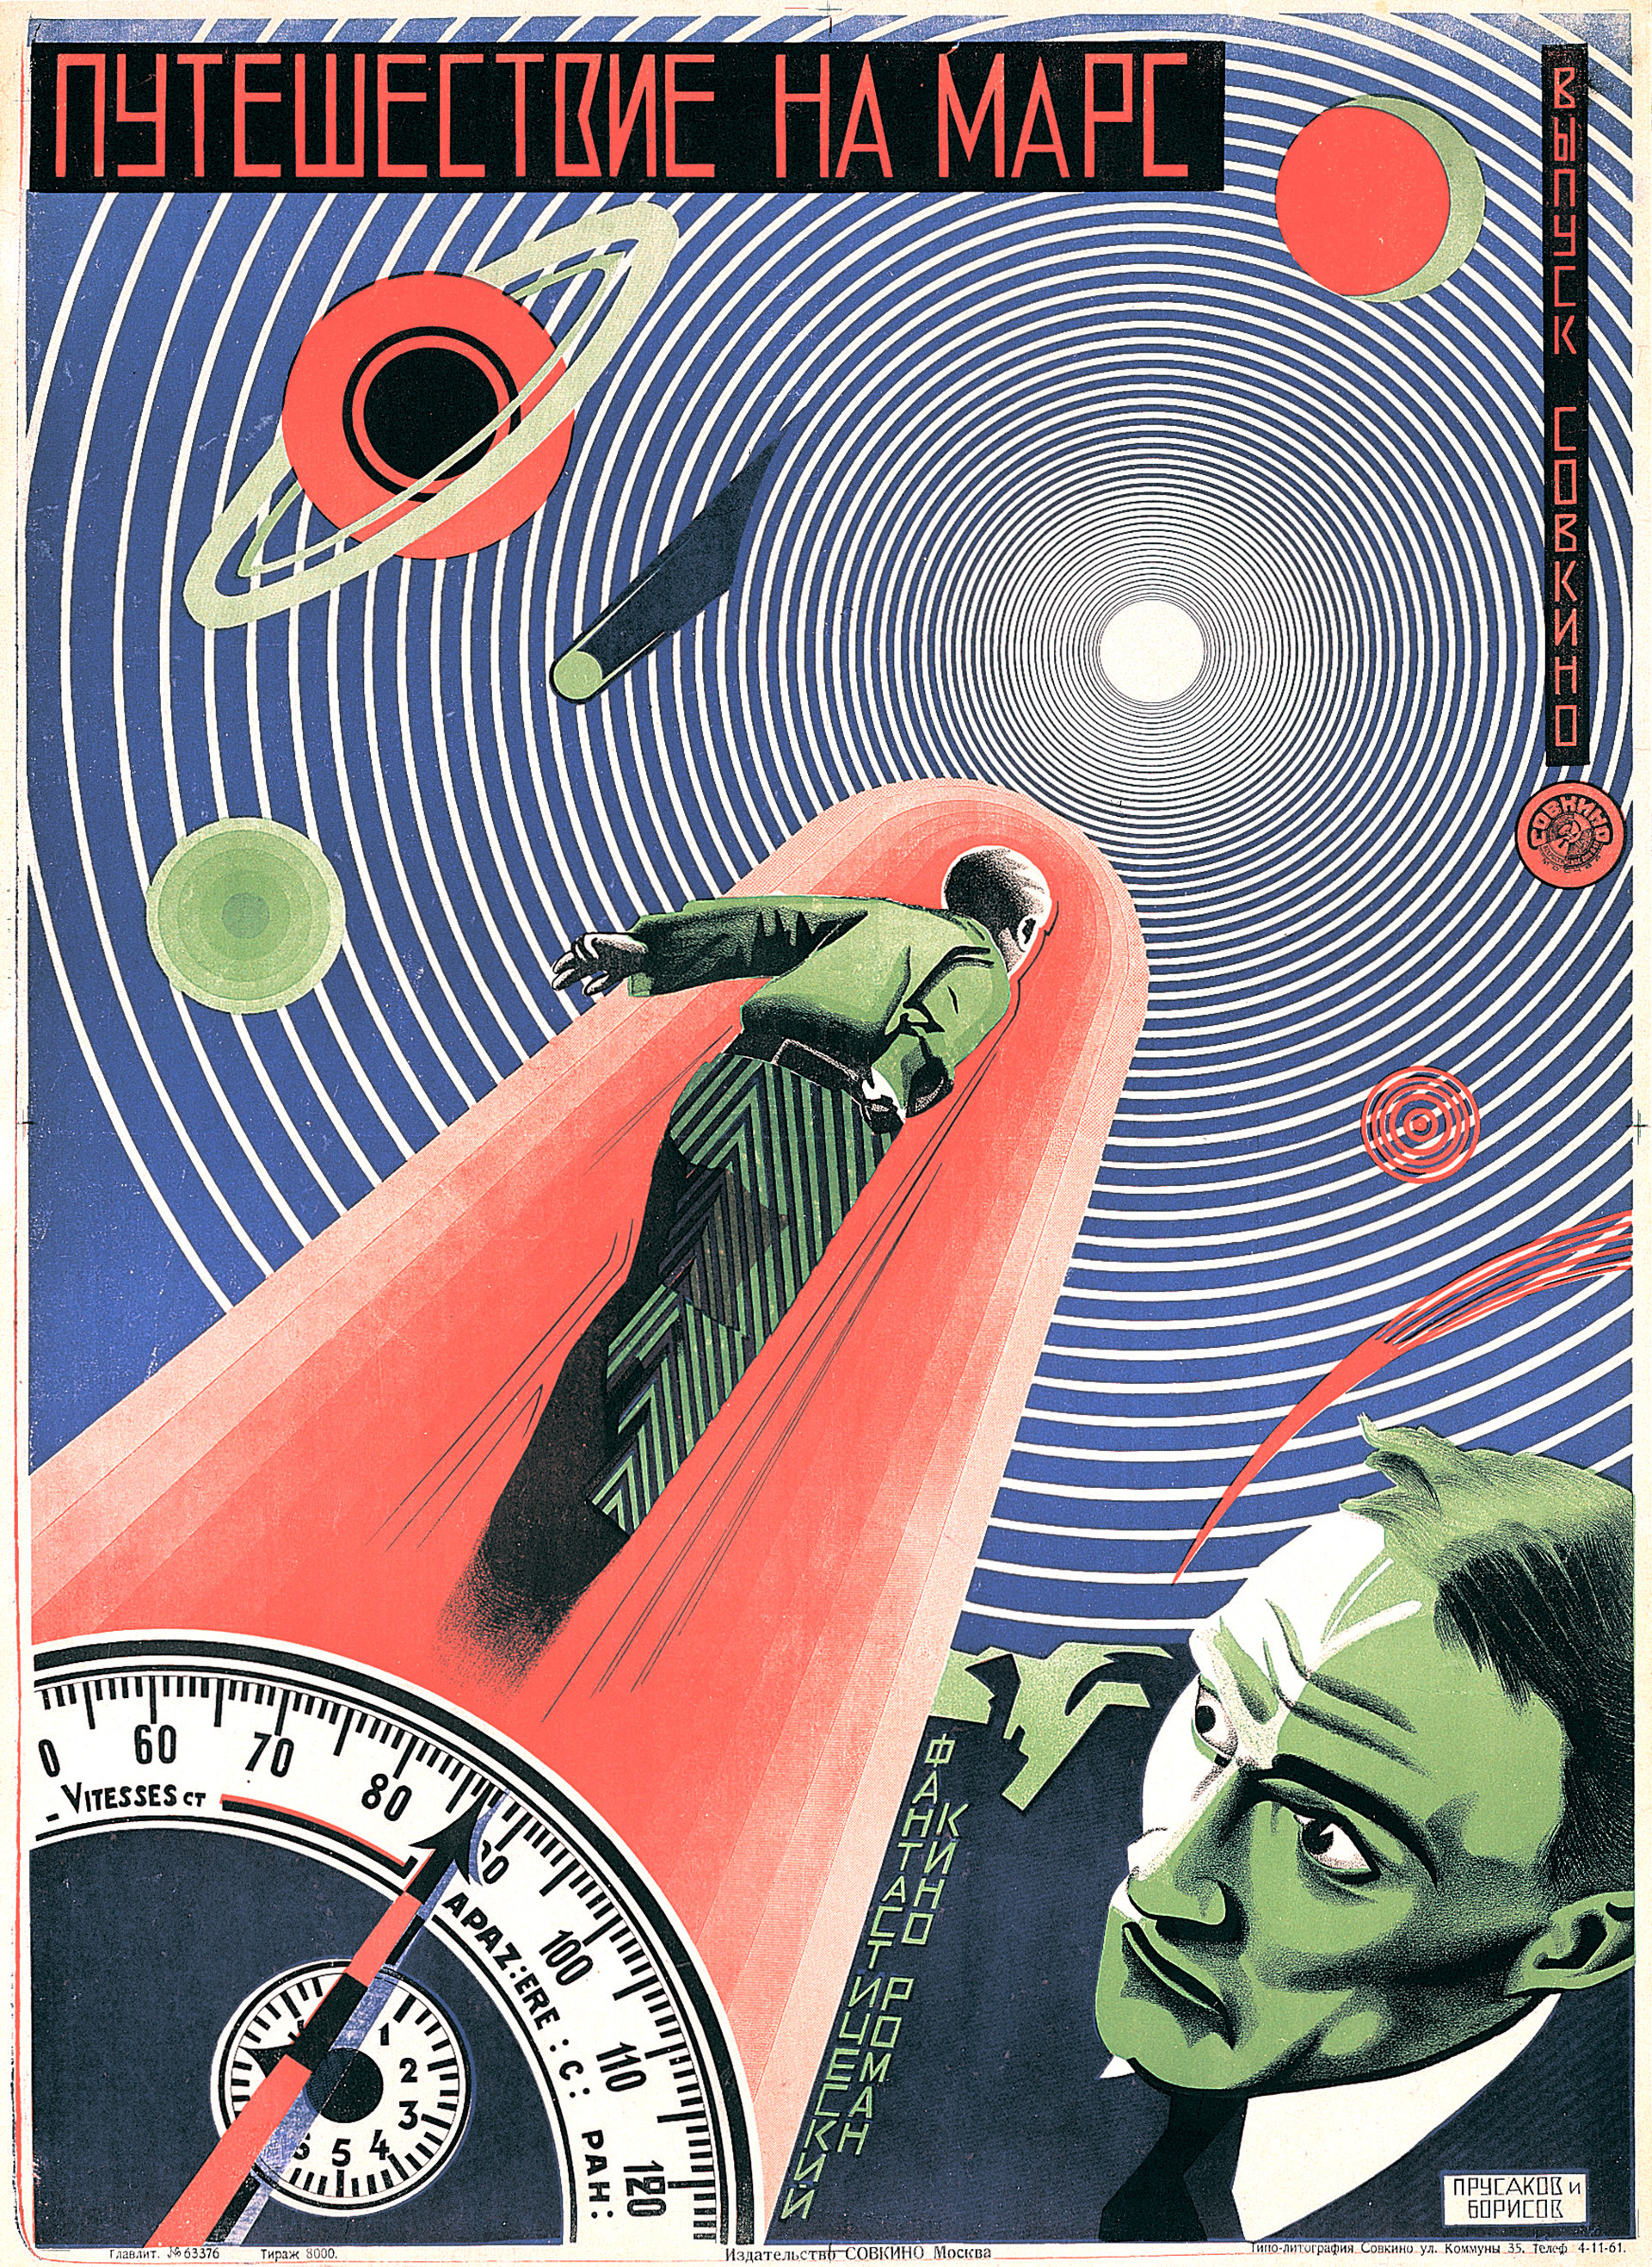 ニコライ・プルサコフ、グリゴリー・ボリソフ、映画『火星旅行』（1926）のポスター